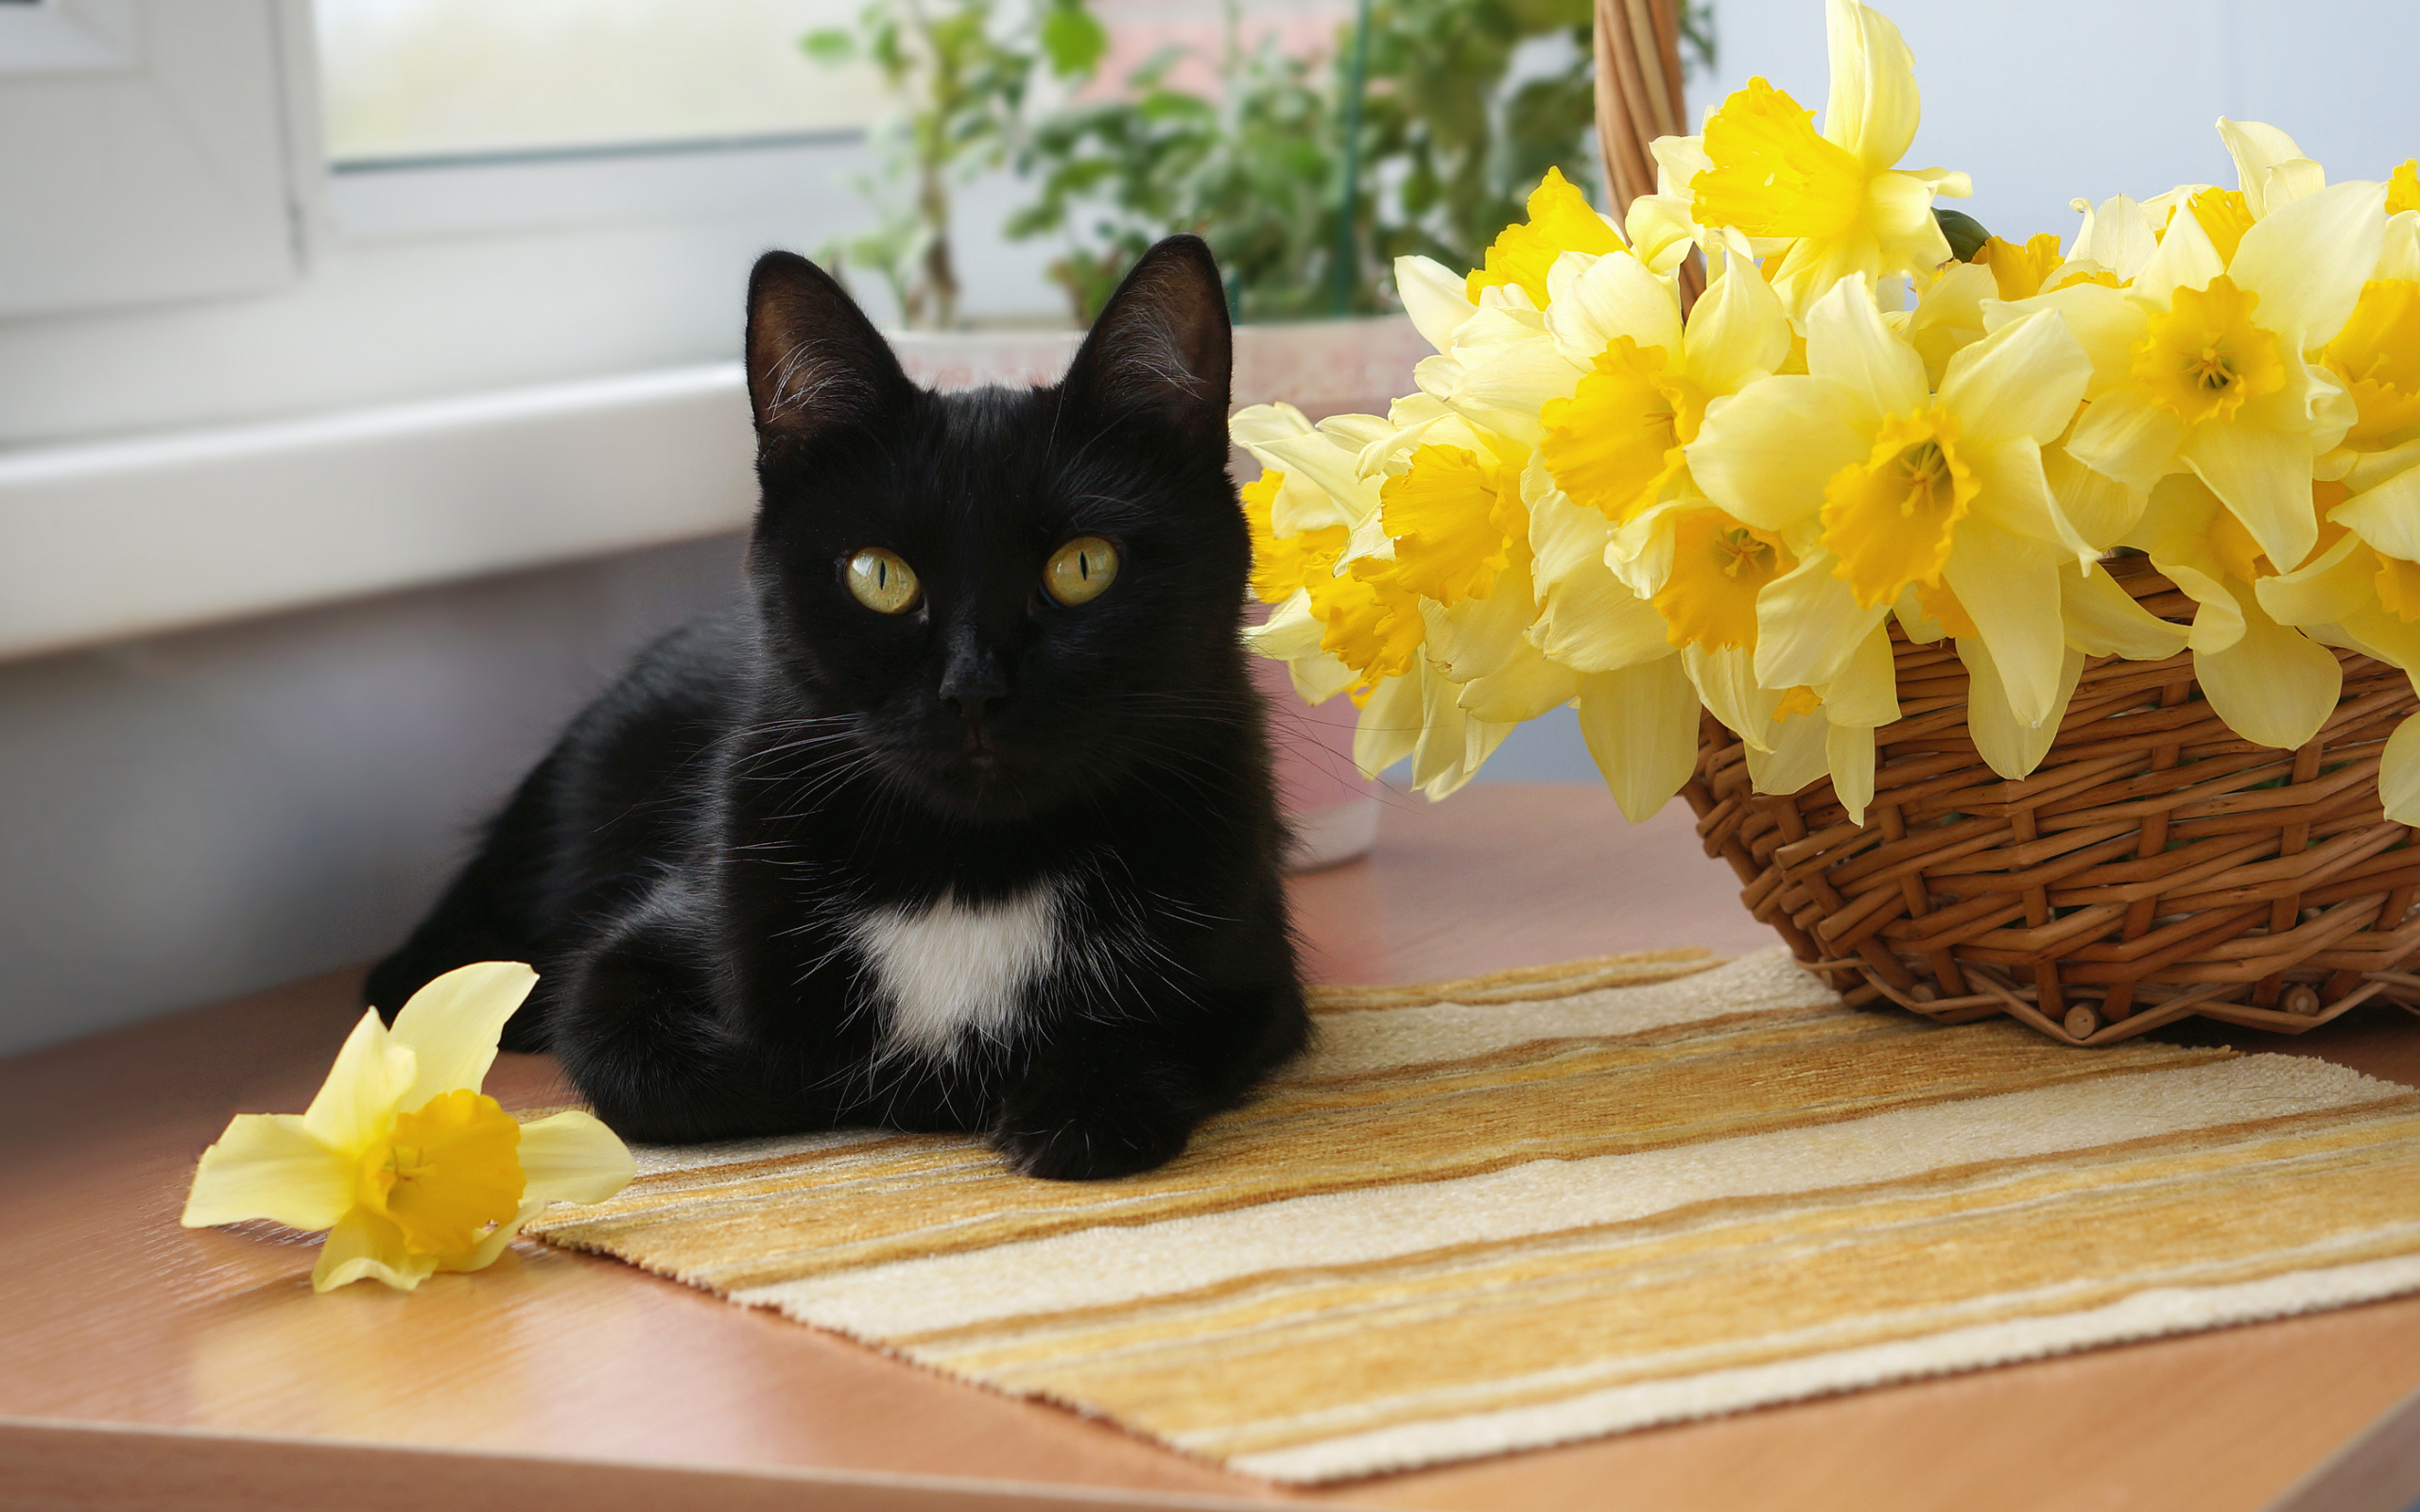 Черный кот у корзины с желтыми нарциссами